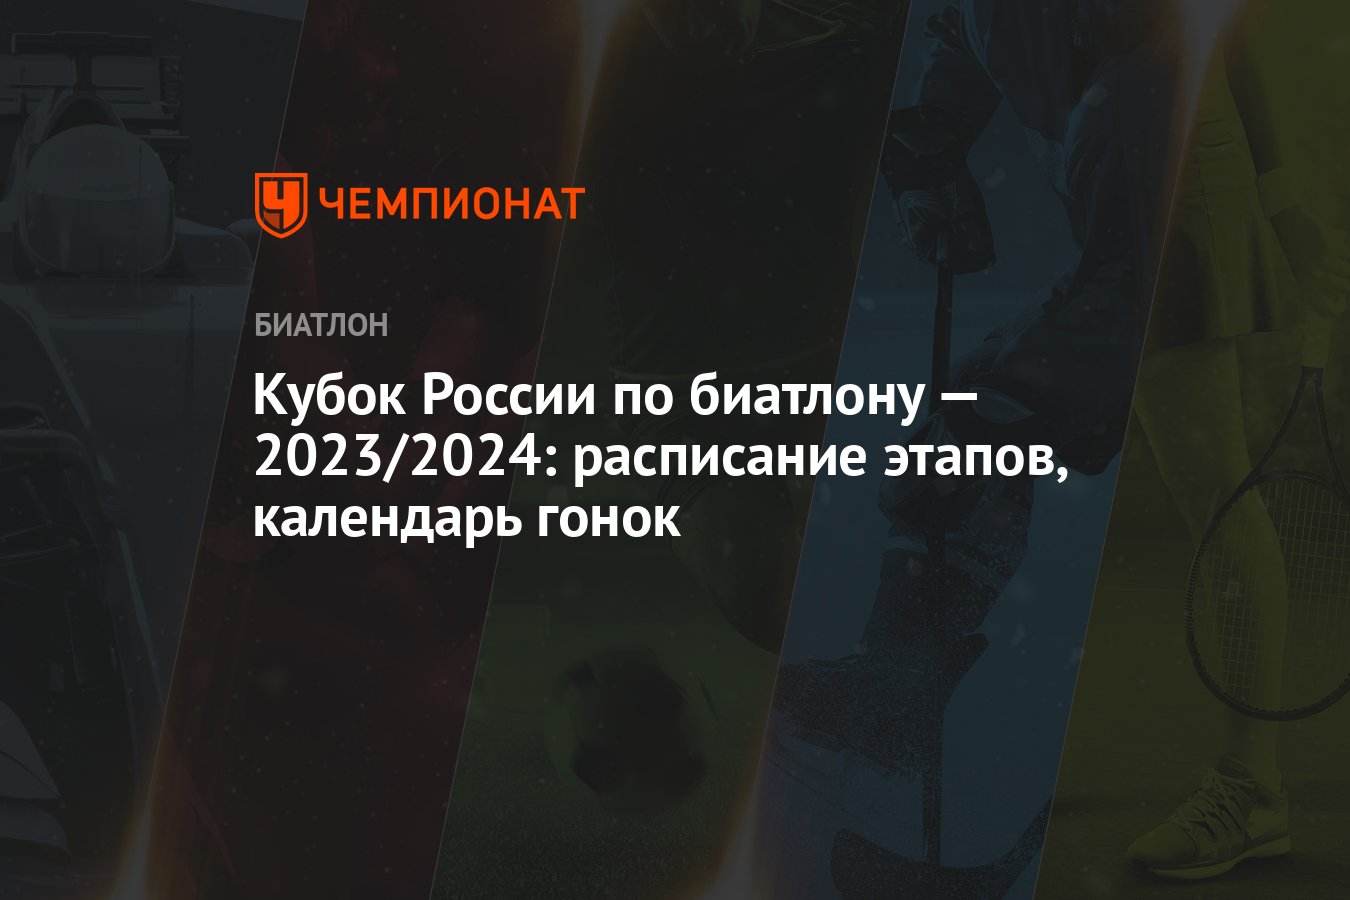 Биатлон расписание трансляций 2024 кубок россии